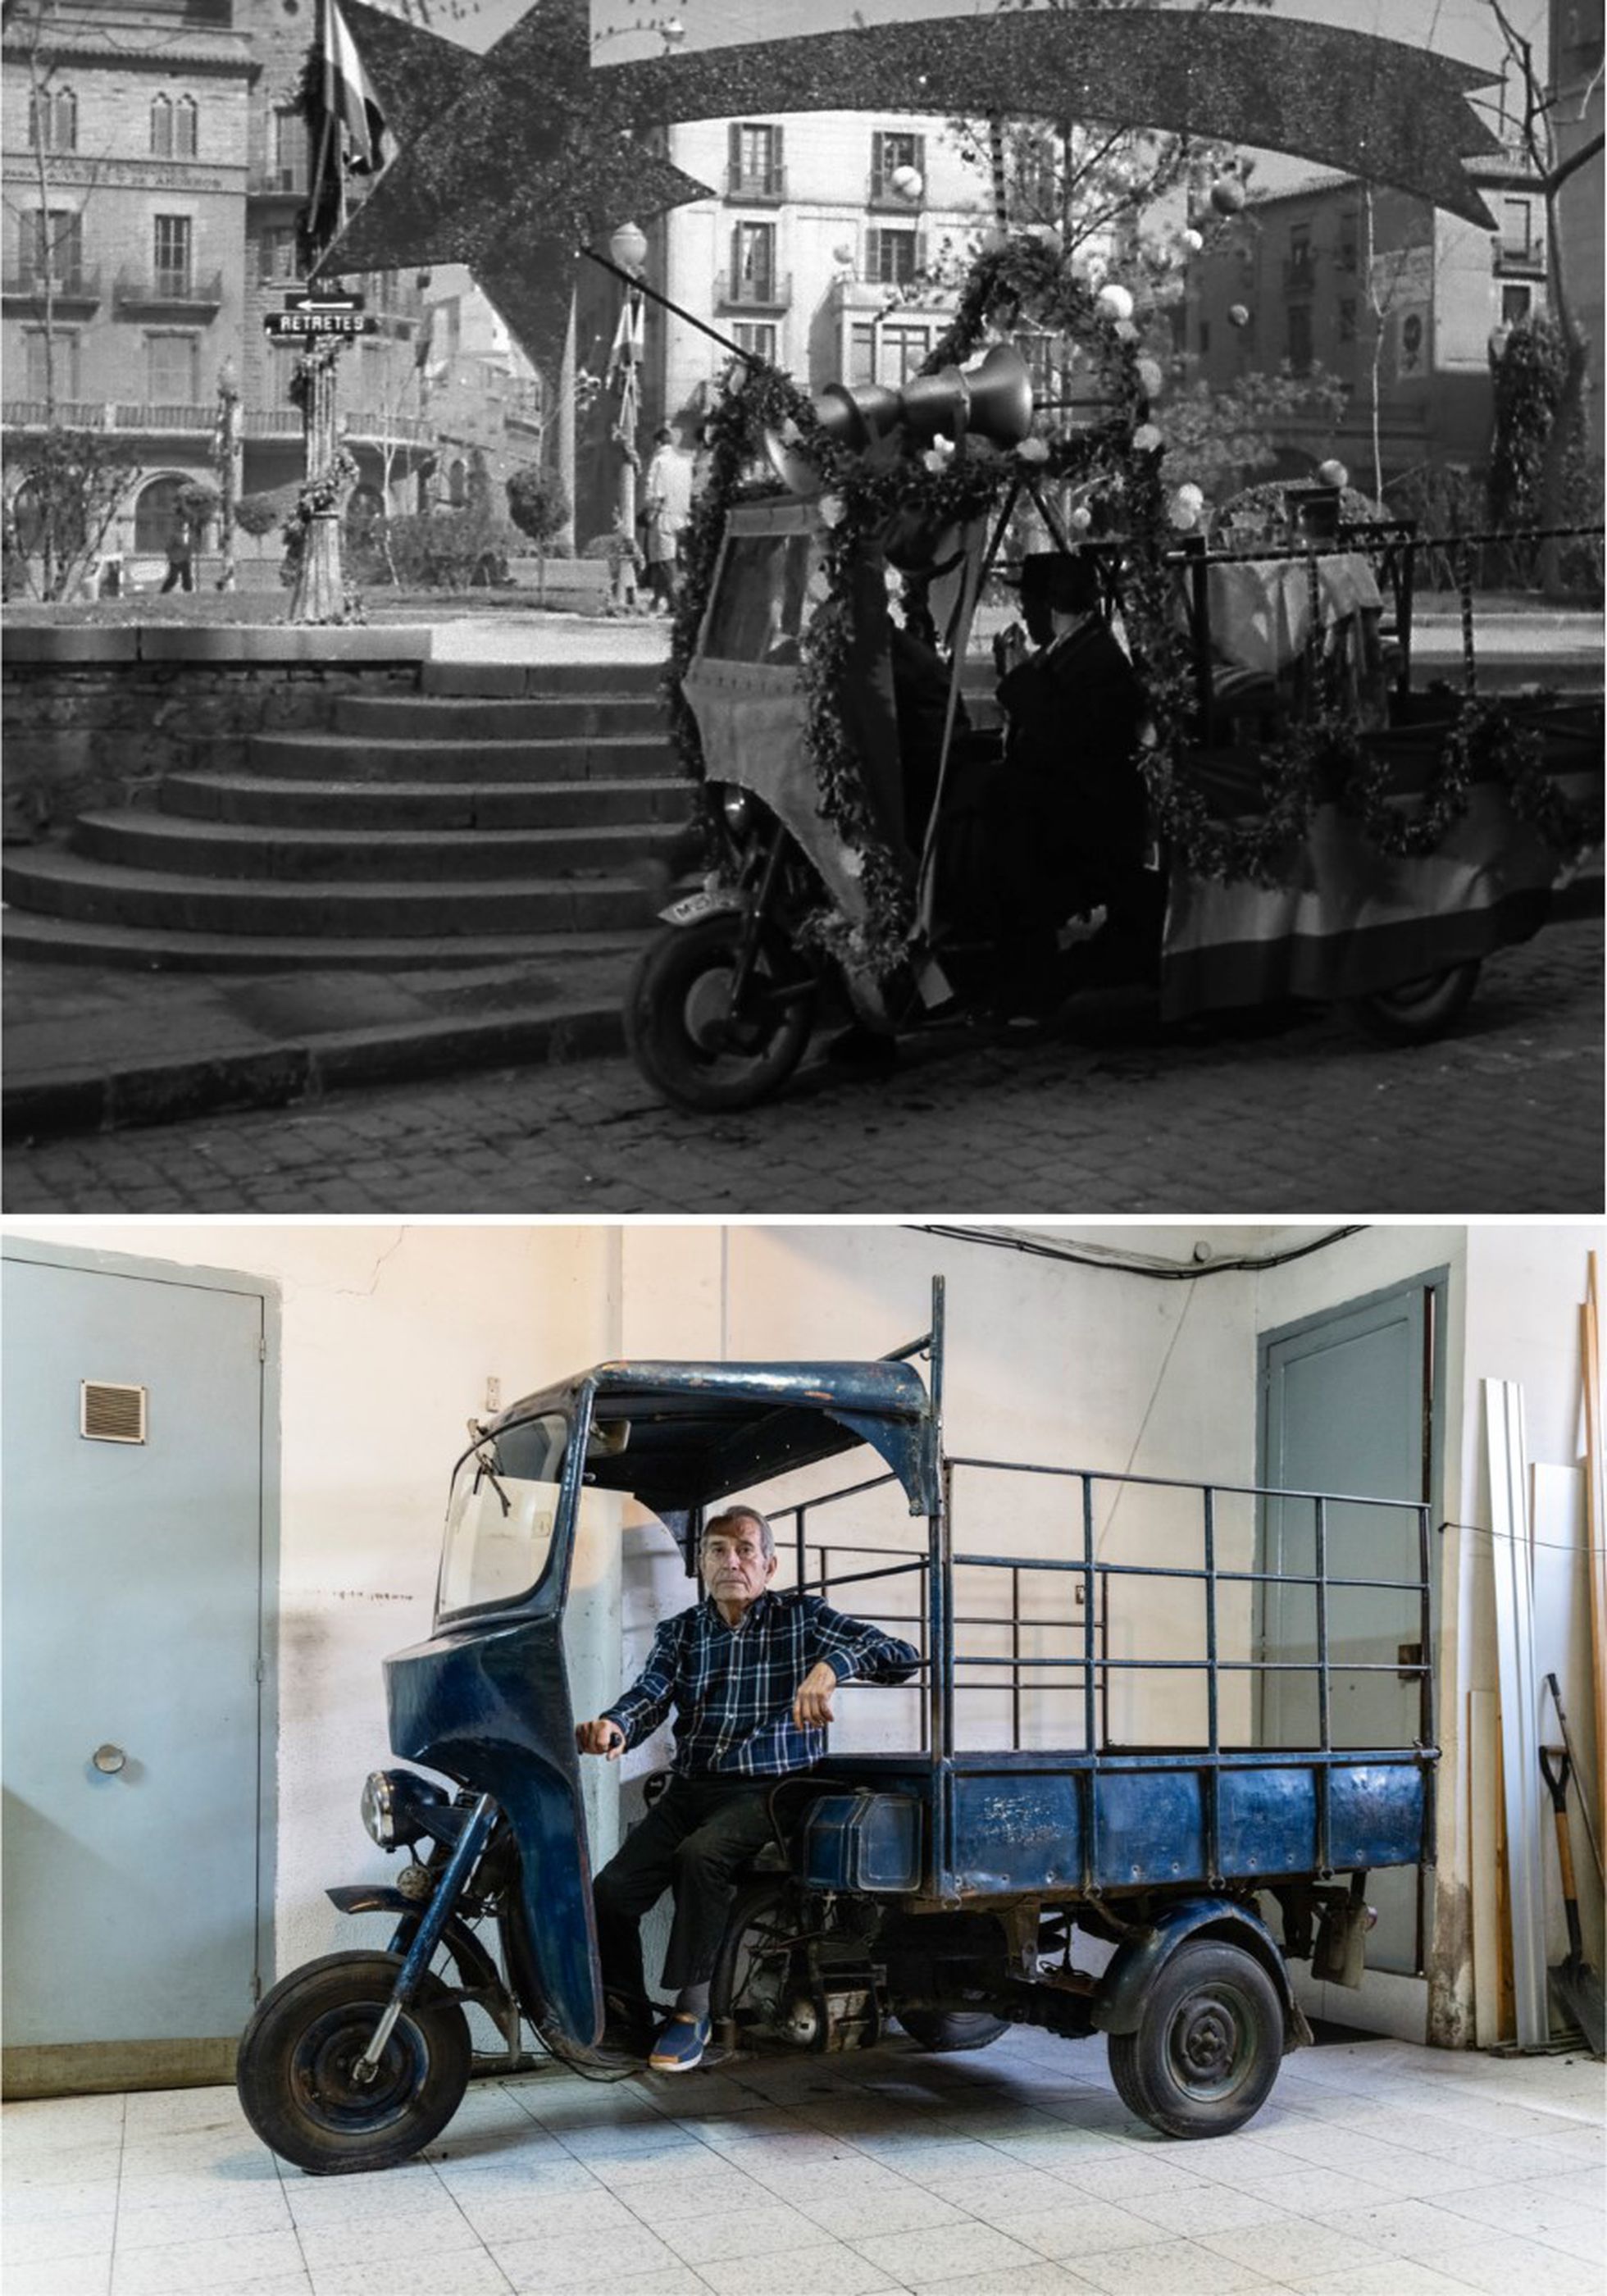 Arriba, el motocarro de 'Plácido', en el arranque de la película en la plaza Sant Domènec de Manresa. Debajo, el motocarro y su propietario, Enric Martí, el pasado 8 de abril en el garaje de su casa.